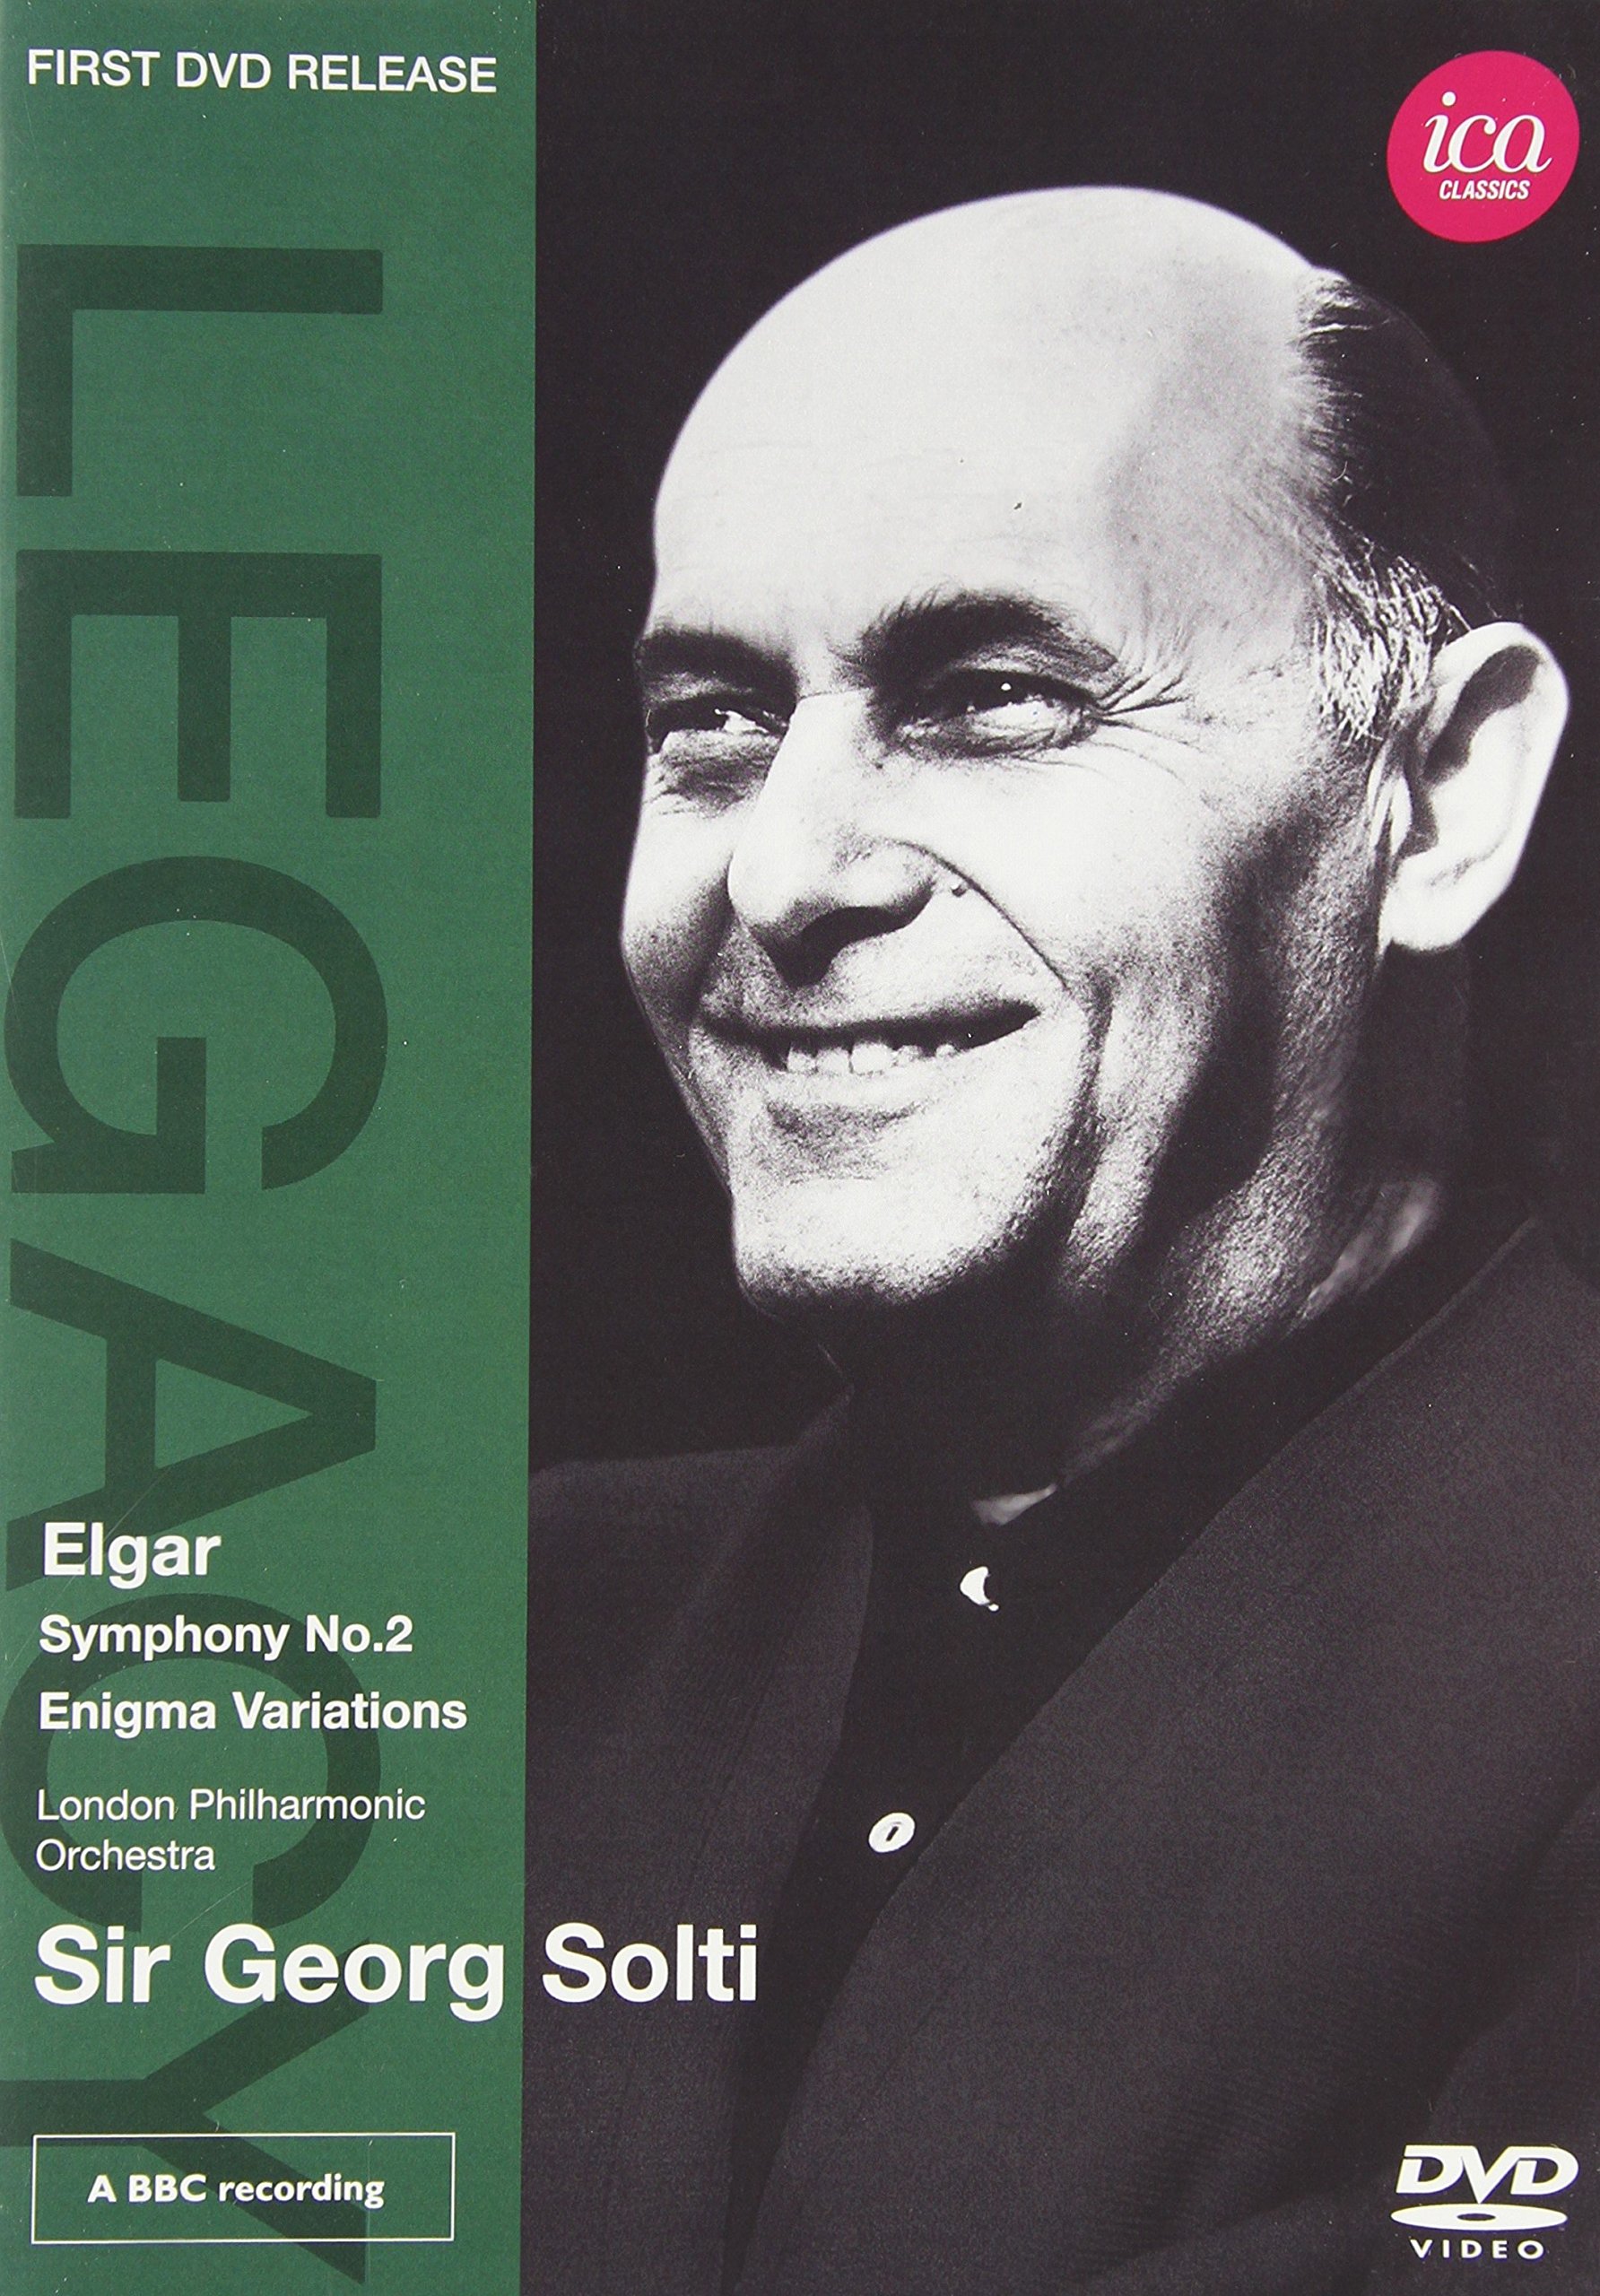 Music Dvd Edward Elgar - Symphony No. 2 / Enigma Variations NUOVO SIGILLATO, EDIZIONE DEL 24/03/2011 SUBITO DISPONIBILE